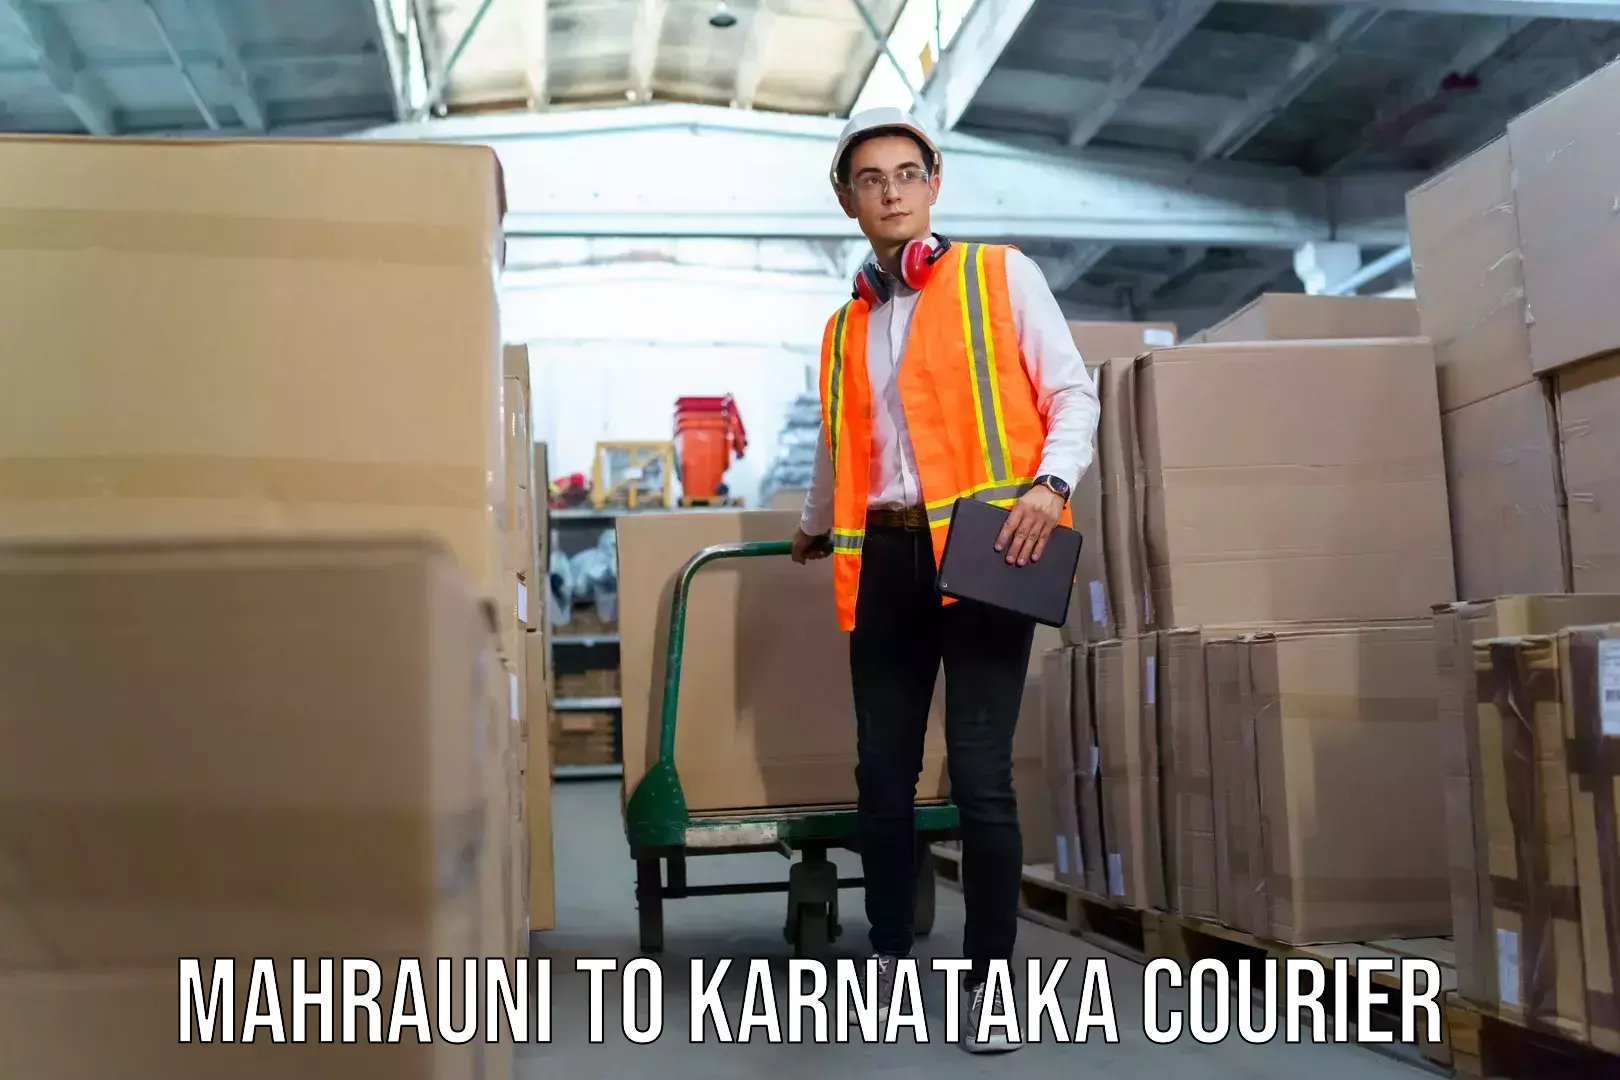 Baggage shipping quotes Mahrauni to Karnataka